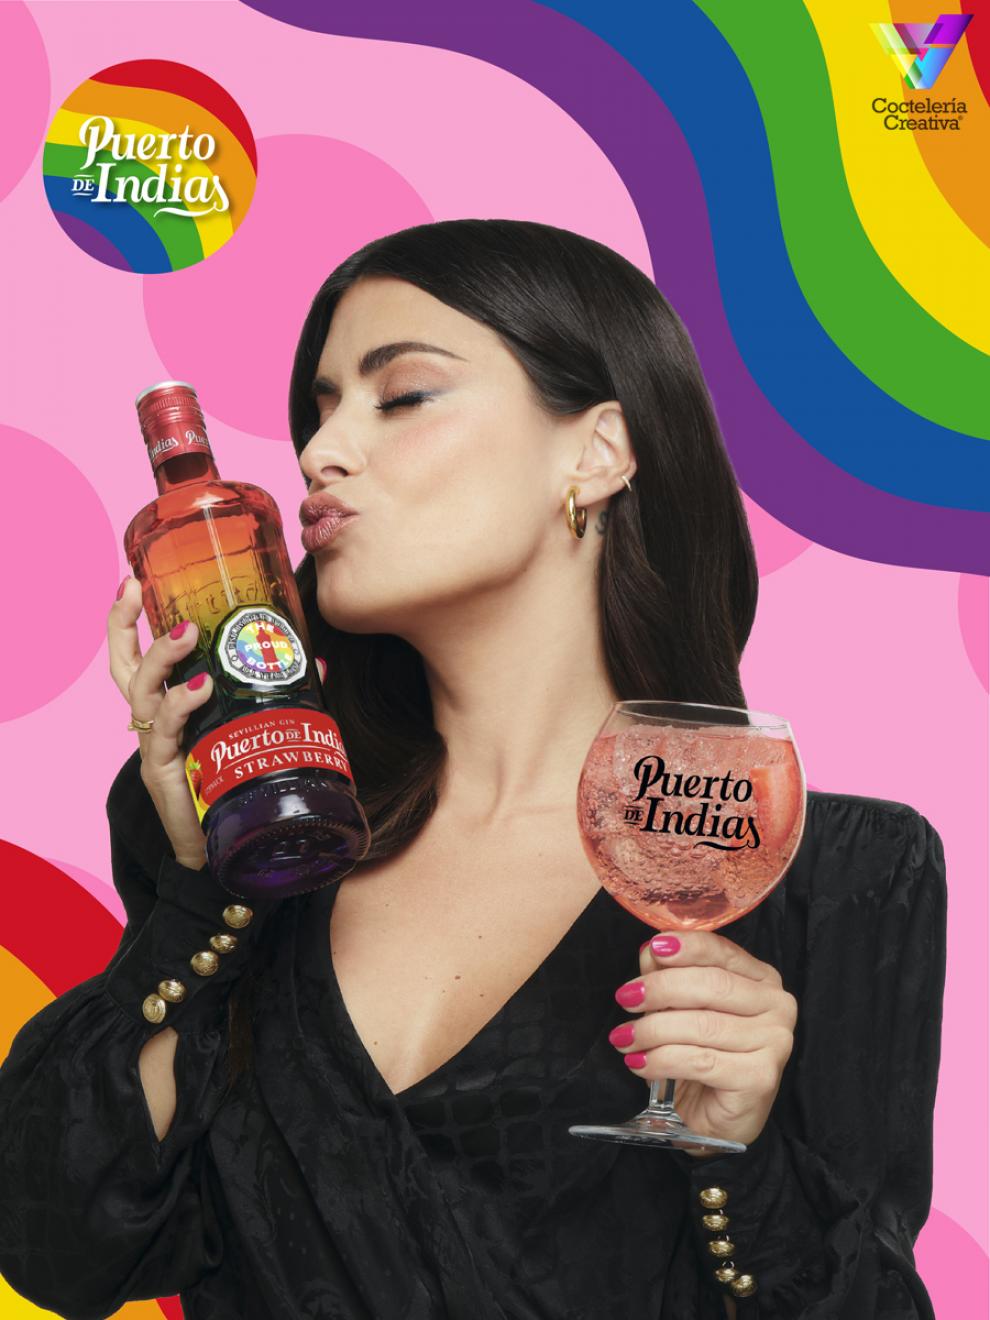 Mujer besando botella de Puerto de Indias con copa de Puerto de Indias en la mano y fondo con colores de la bandera LGBTIQ+